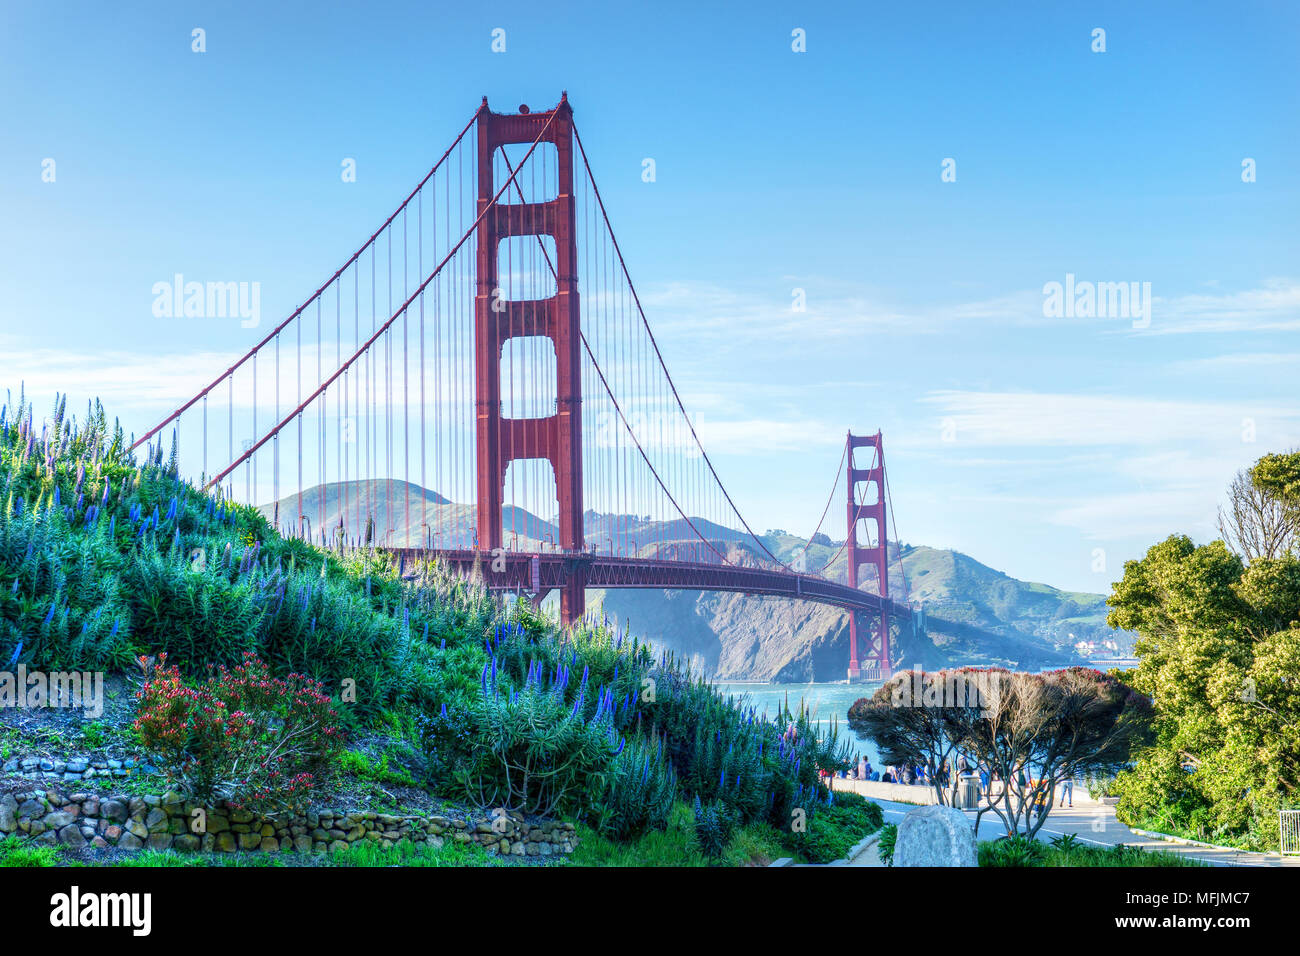 Malerischer Blick auf die Golden Gate Bridge in San Francisco, Kalifornien. Die Brücke ist eine der international anerkannten Symbole für San F Stockfoto